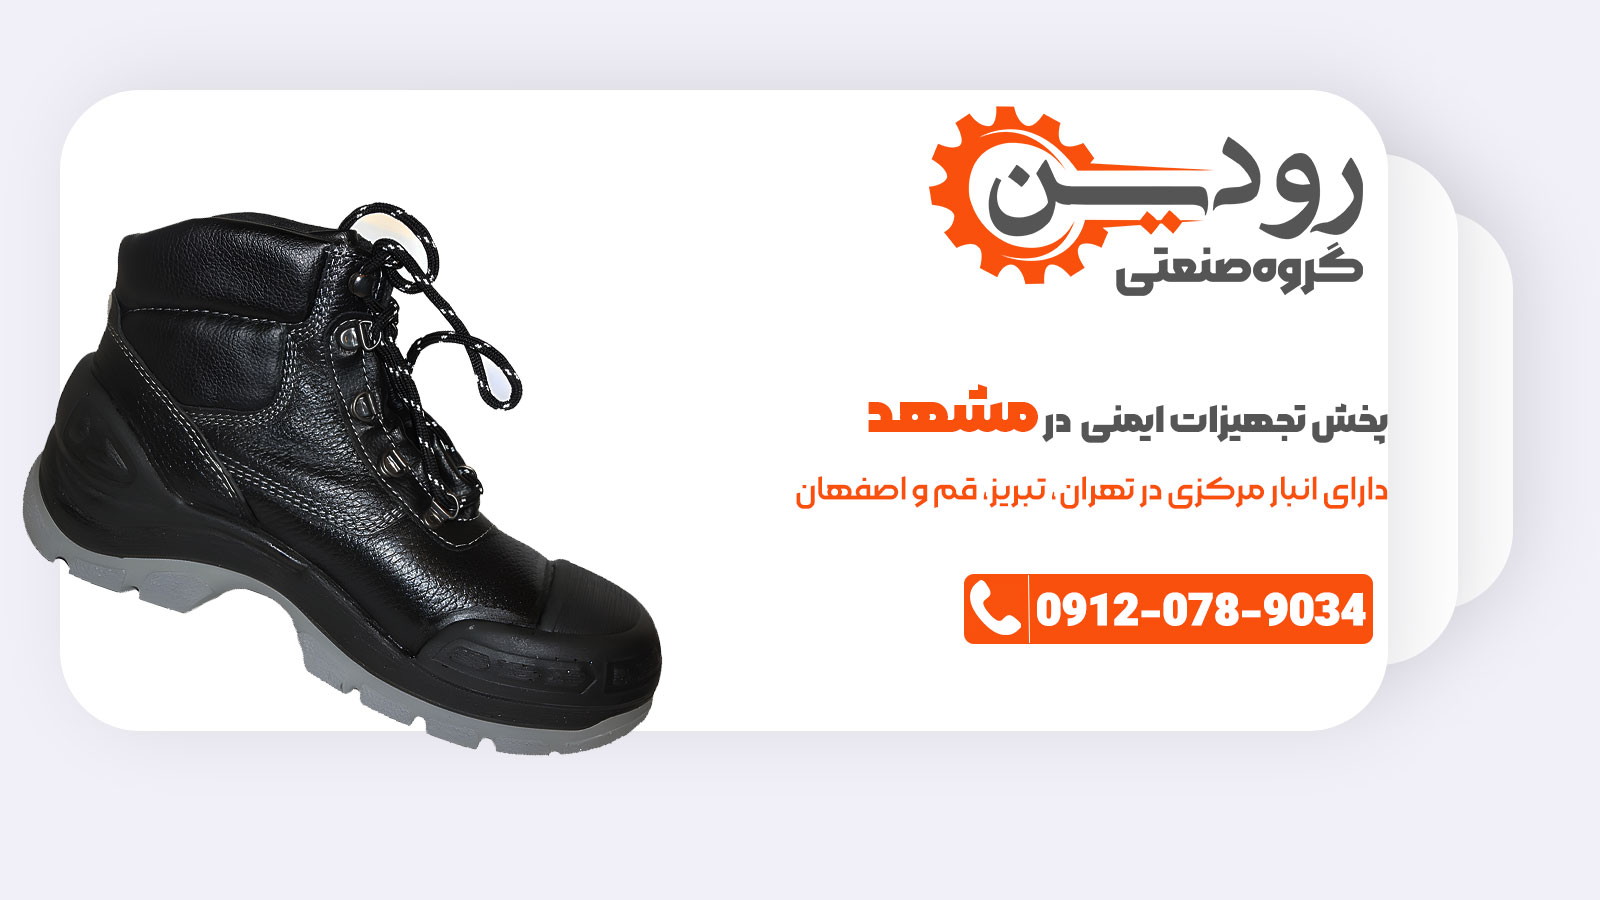 خرید انواع کفش ایمنی، لباس کار و دستکش ایمنی و غیره از فروشگاه لوازم ایمنی در مشهد